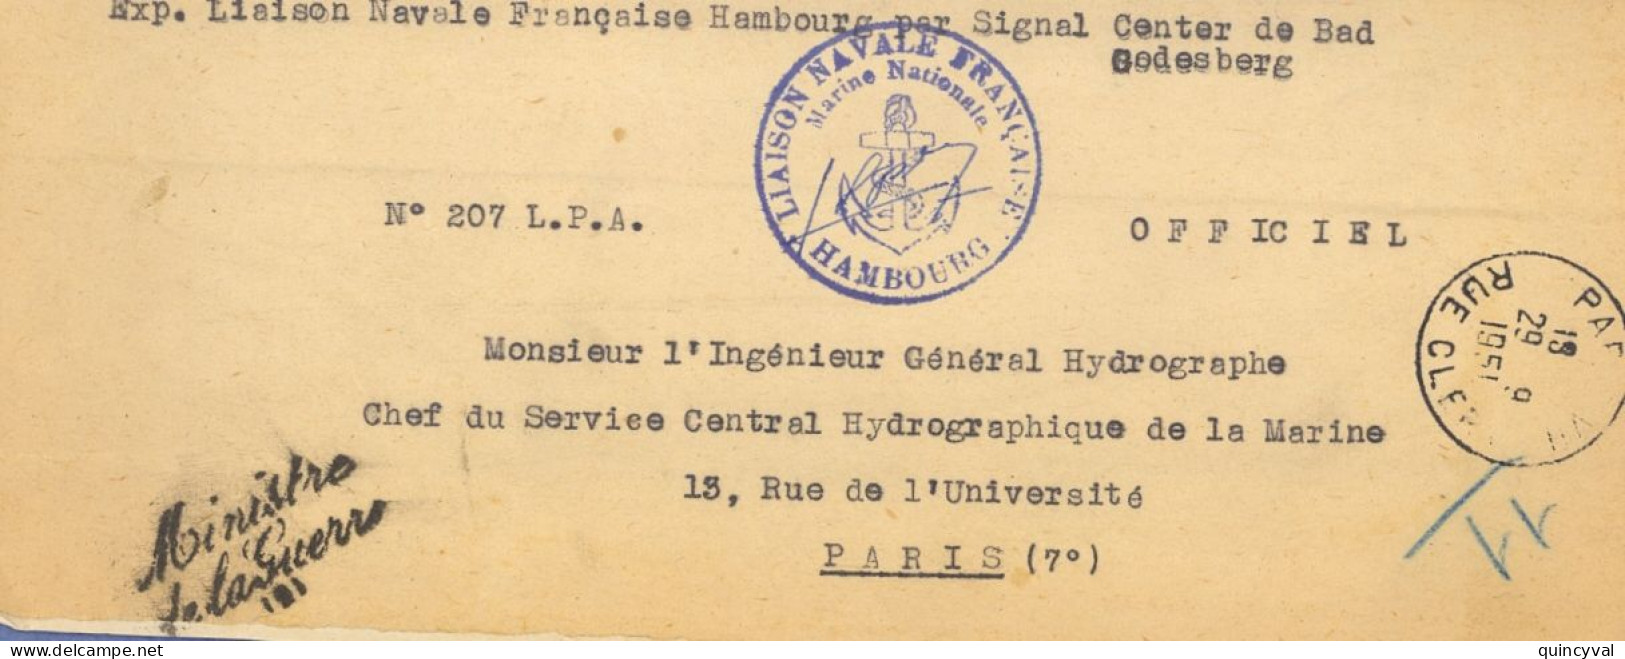 Liaison Navale Française Hambourg Signal Center  Bad Godesberg Griffe Ministre De La Guerre 1951 Paris Clery Ancre - Posta Marittima